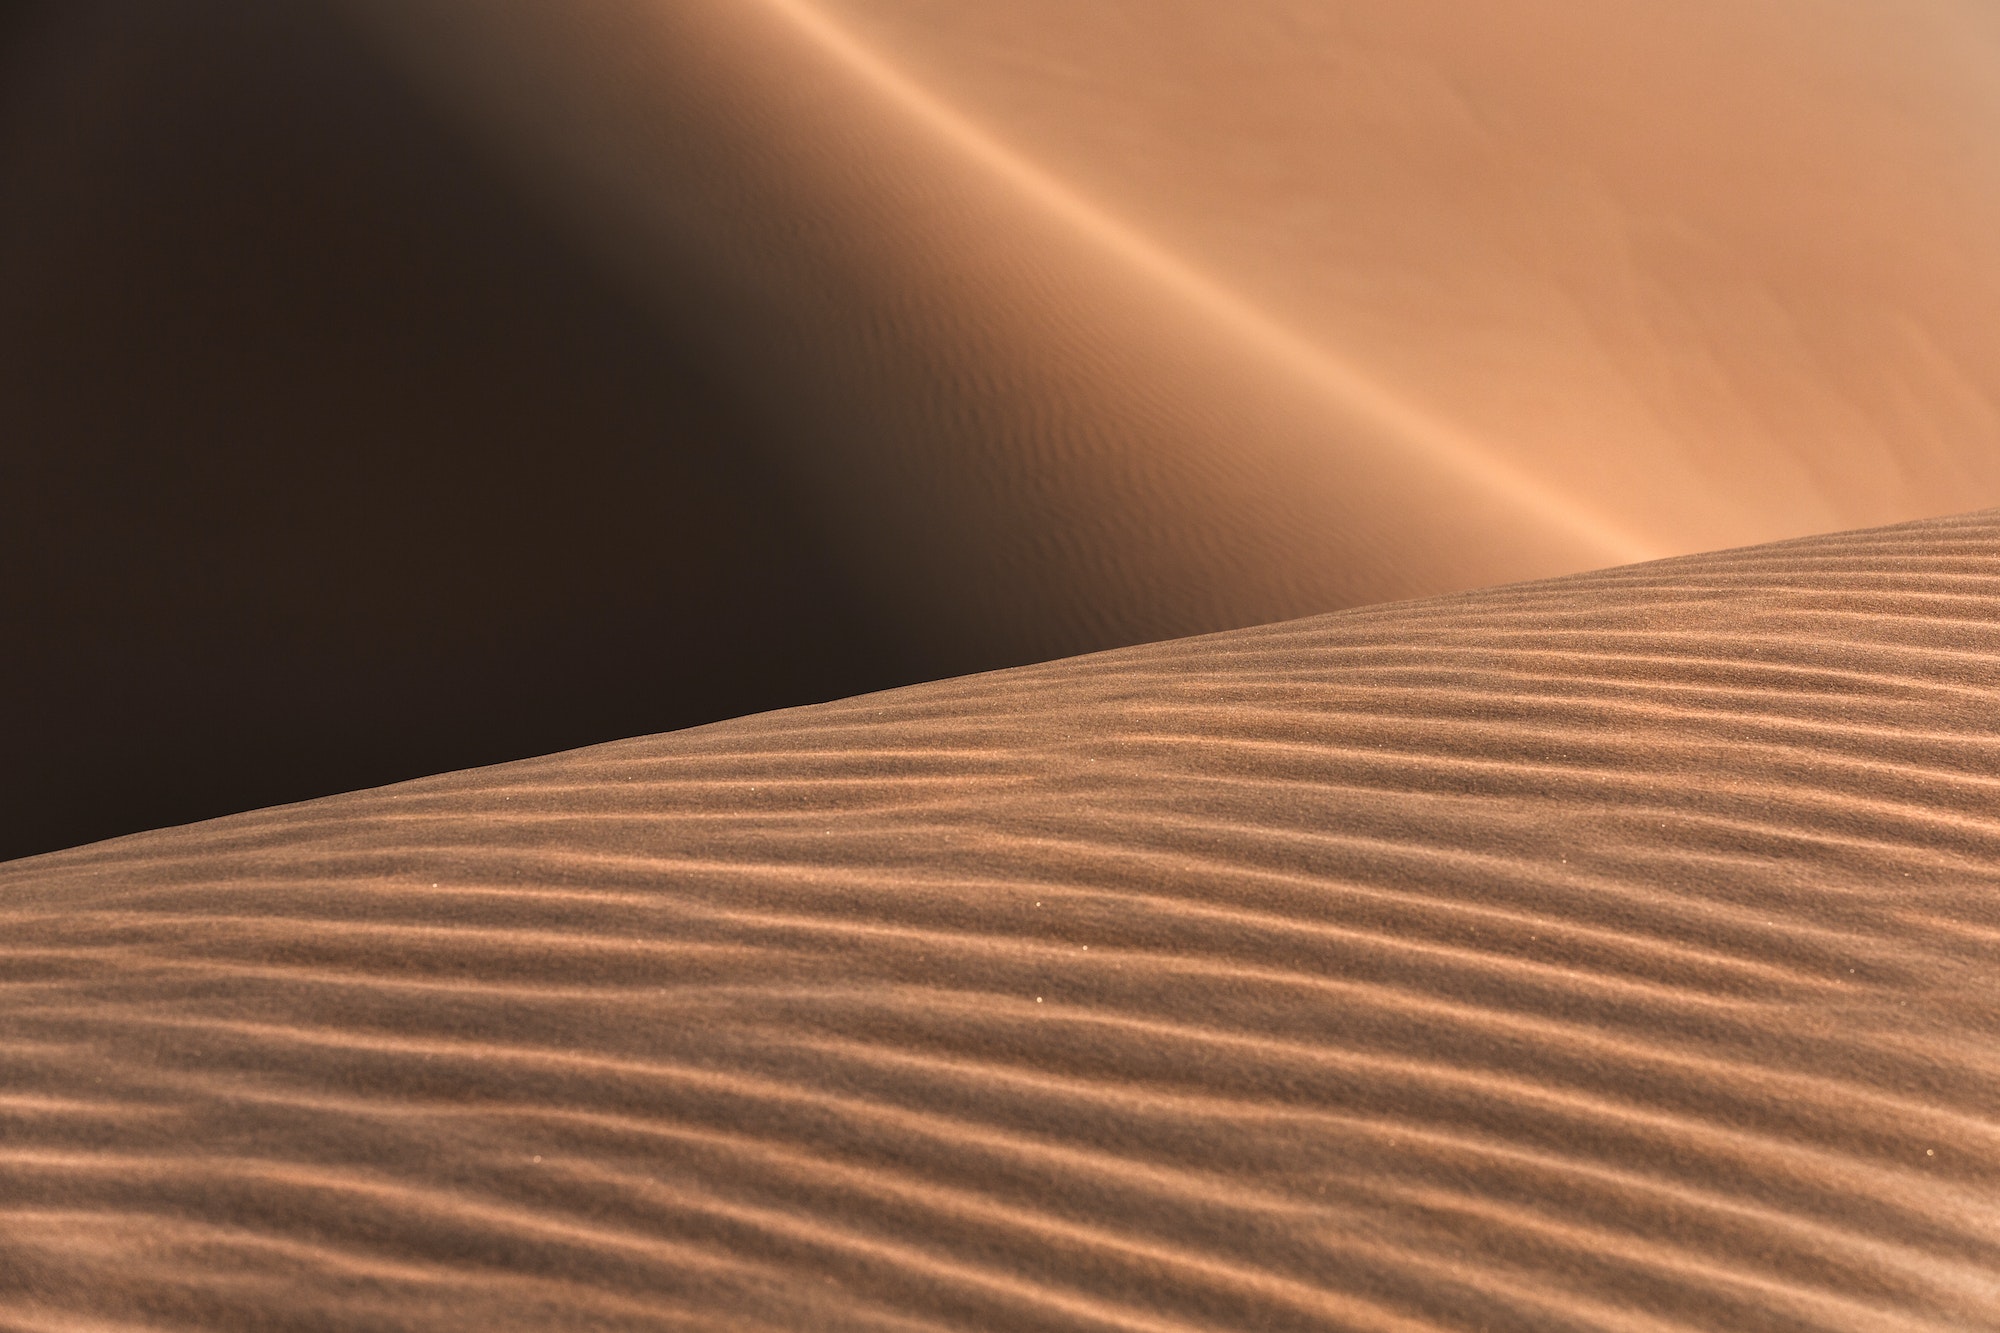 Liwa desert in Abu Dhabi